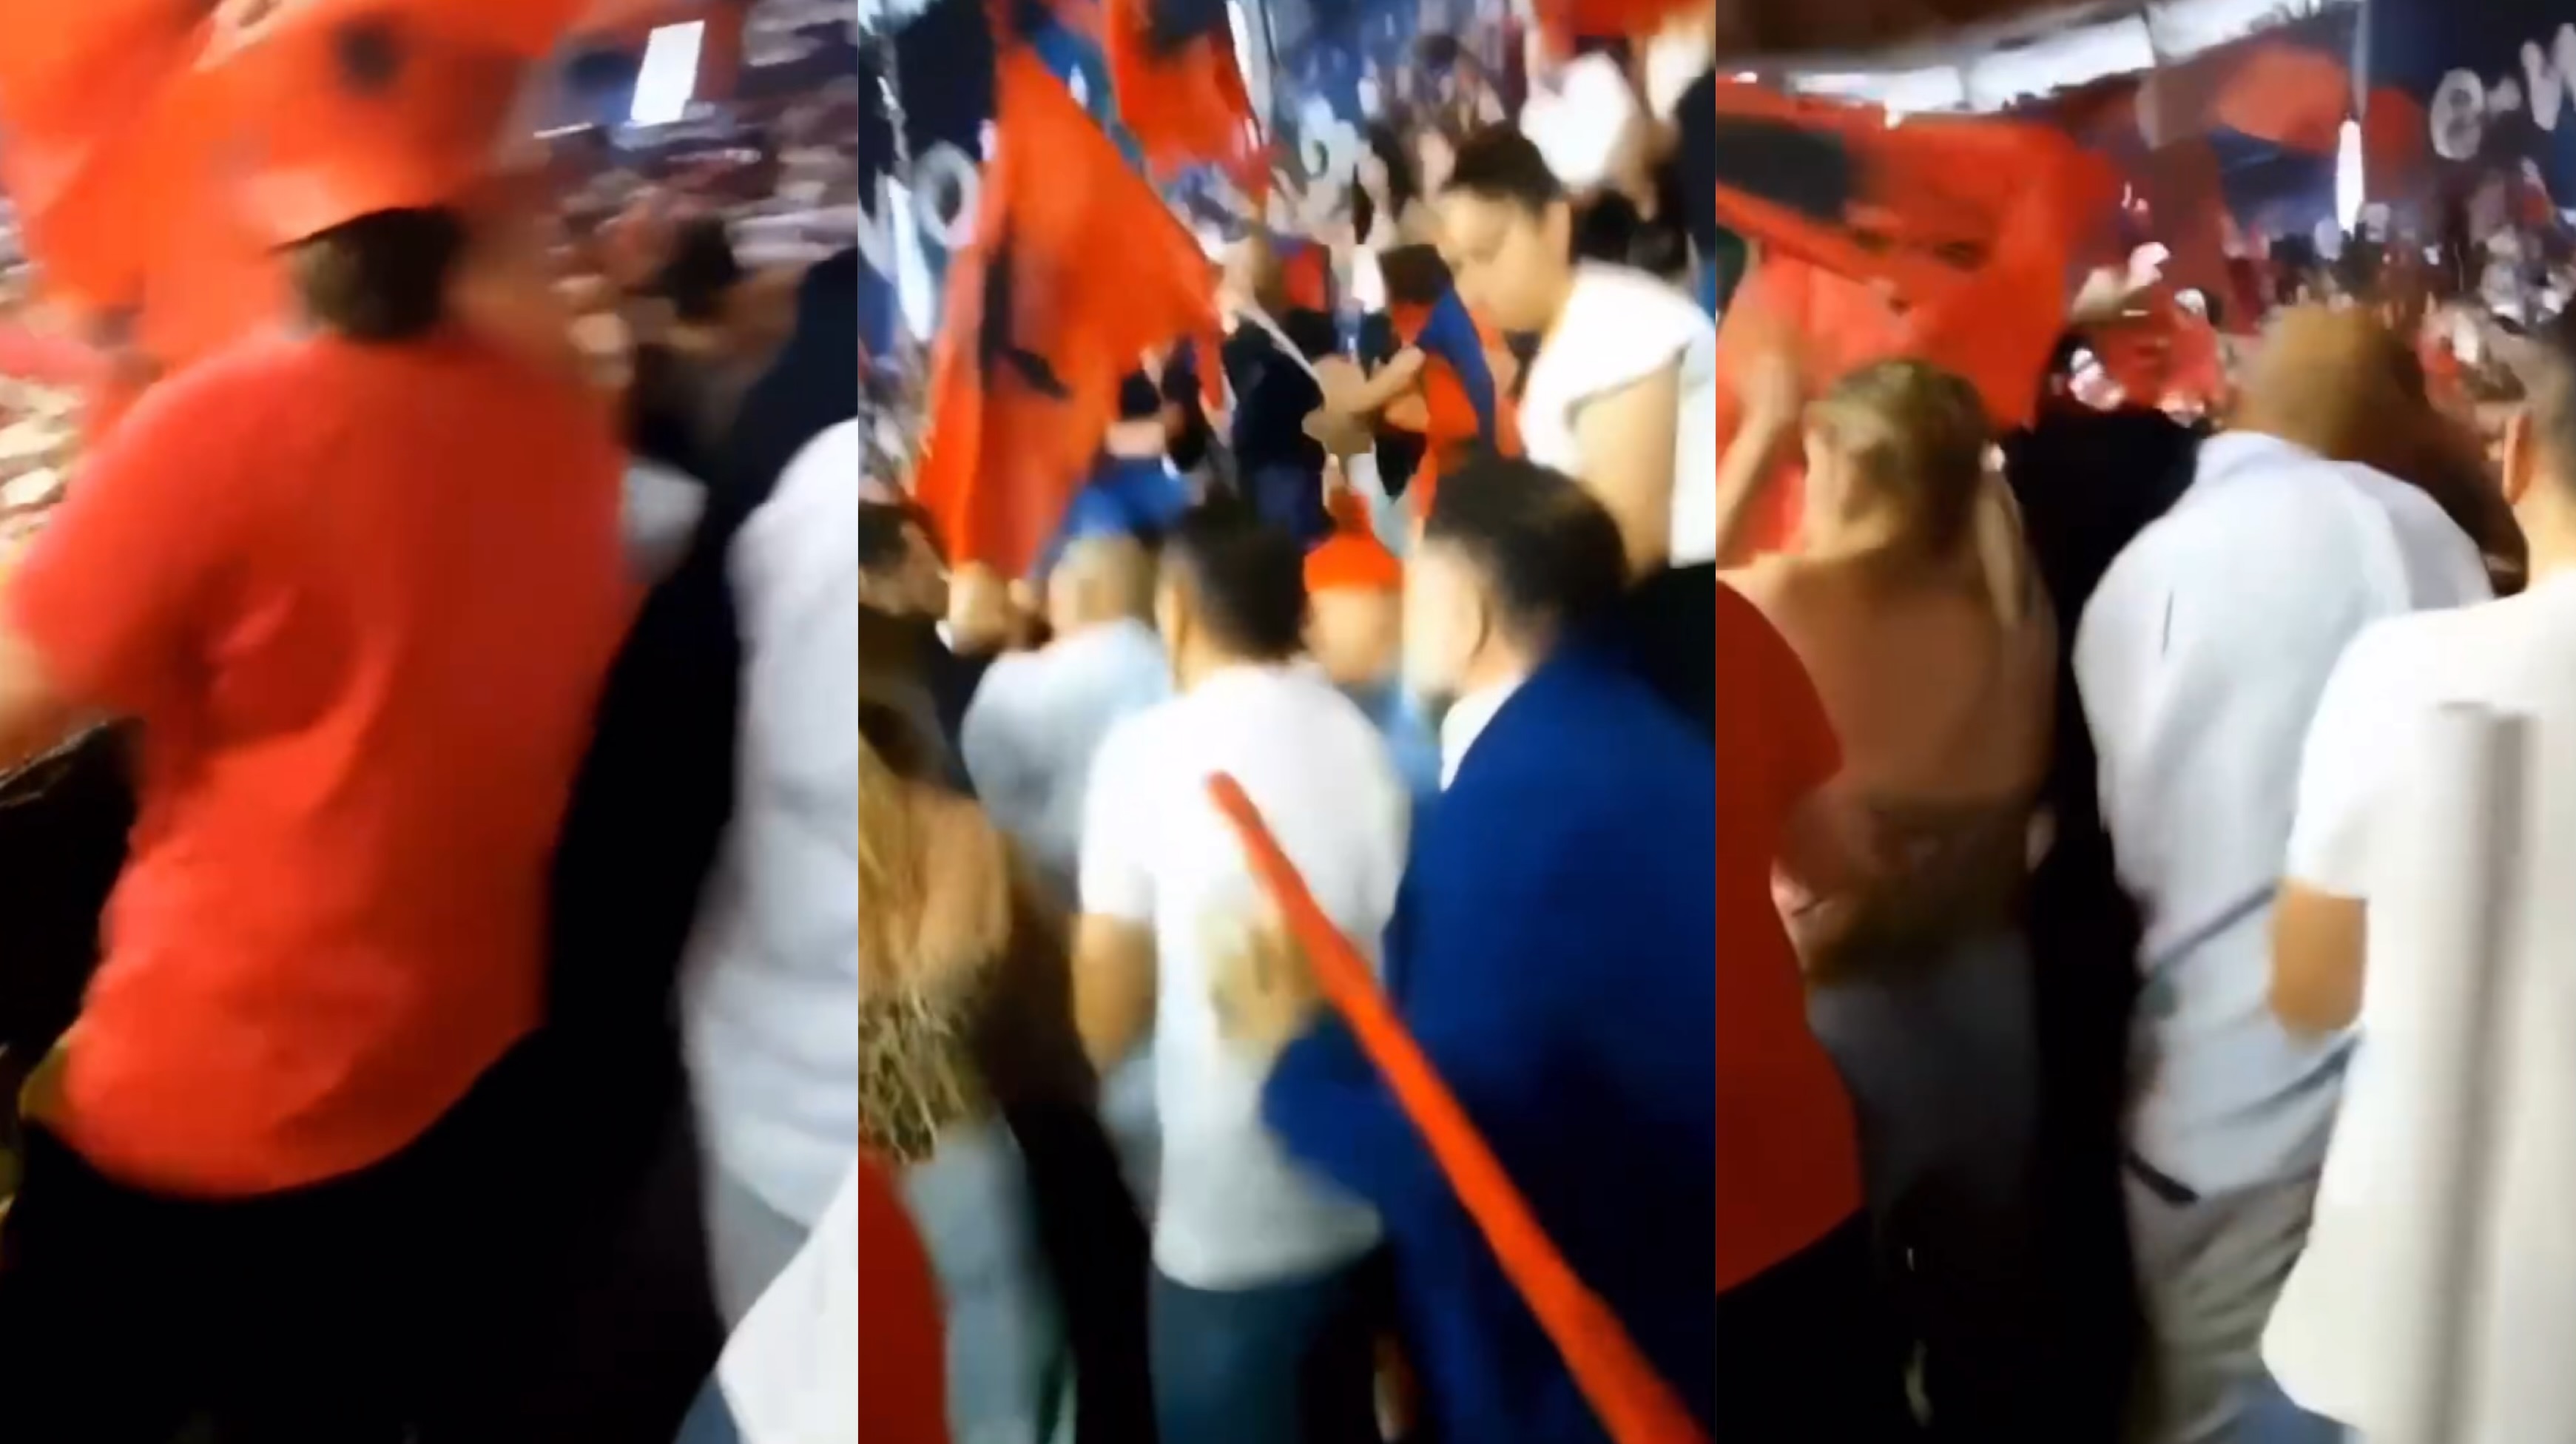 “Dua të votoj”/ Të rinj shqiptarë shpalosin kërkesën e tyre në mitingun e Ramës në Milano, patronazhistët i dhunojnë